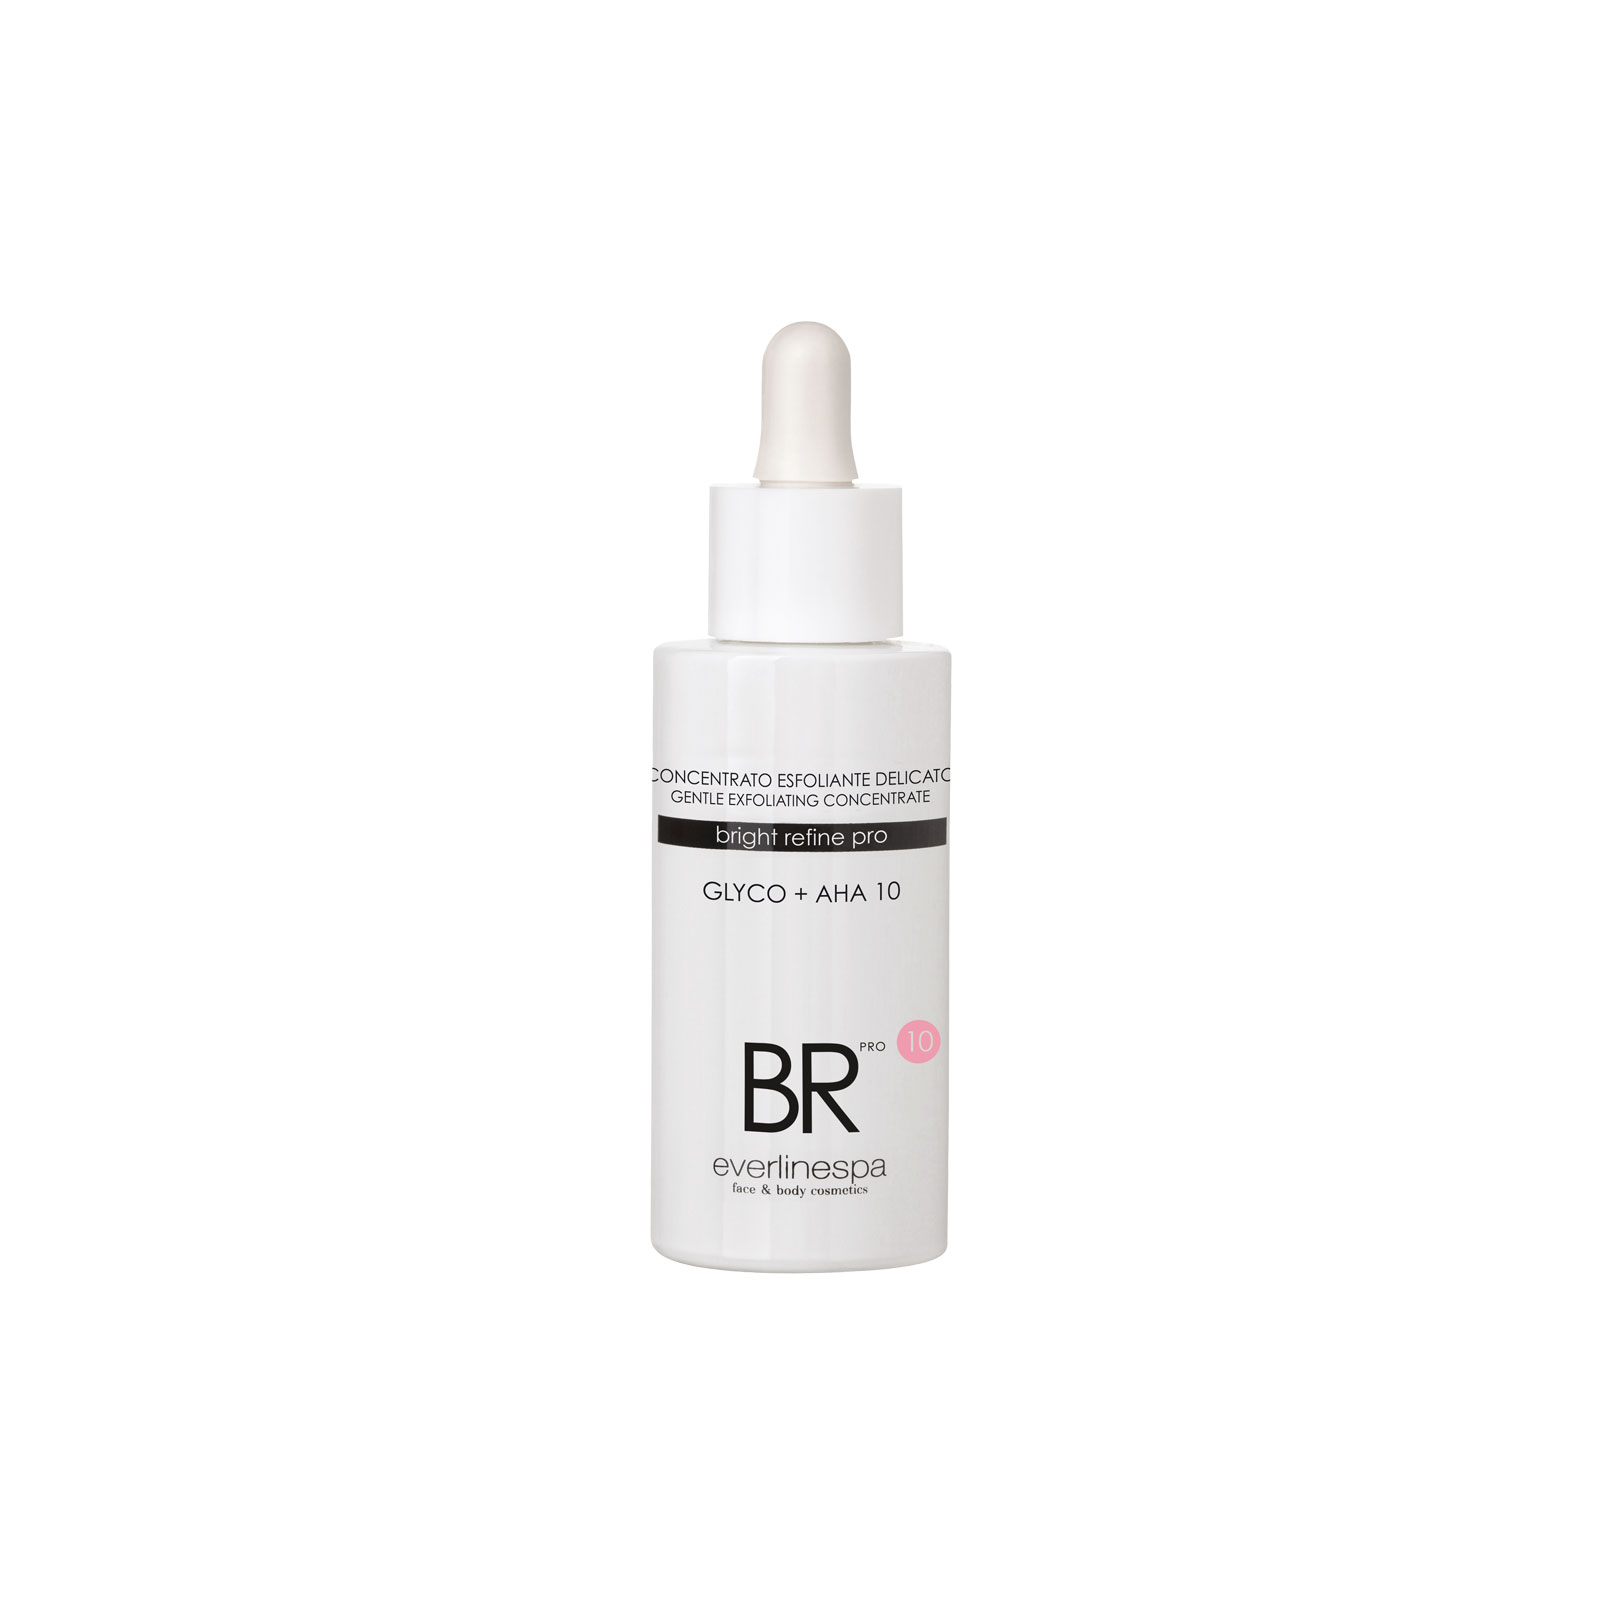 BR_concentrato-exfoliante-delicato- 50 ml.jpg